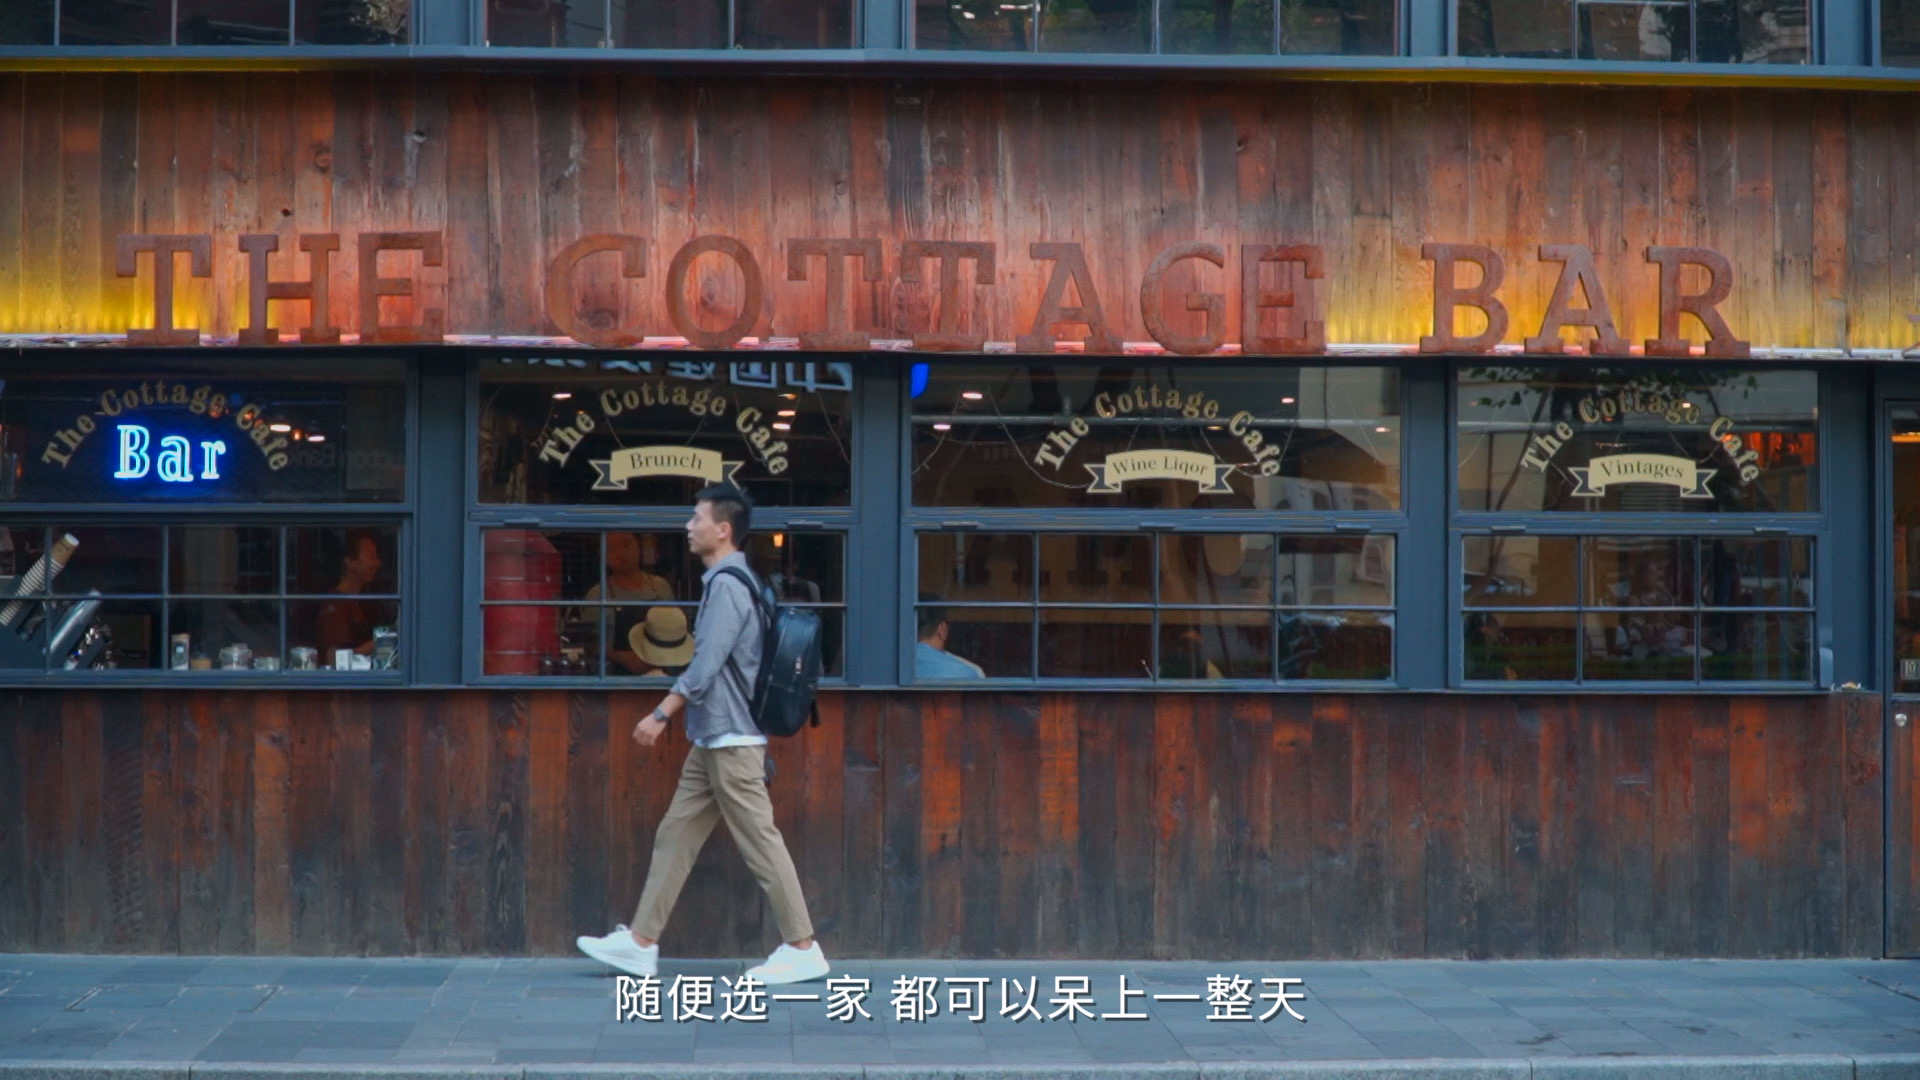 【中国历史文化名街】这是电影《色戒》的取景地，拥有近百年的历史文化  🌟亮点特色： 1.这里有37处